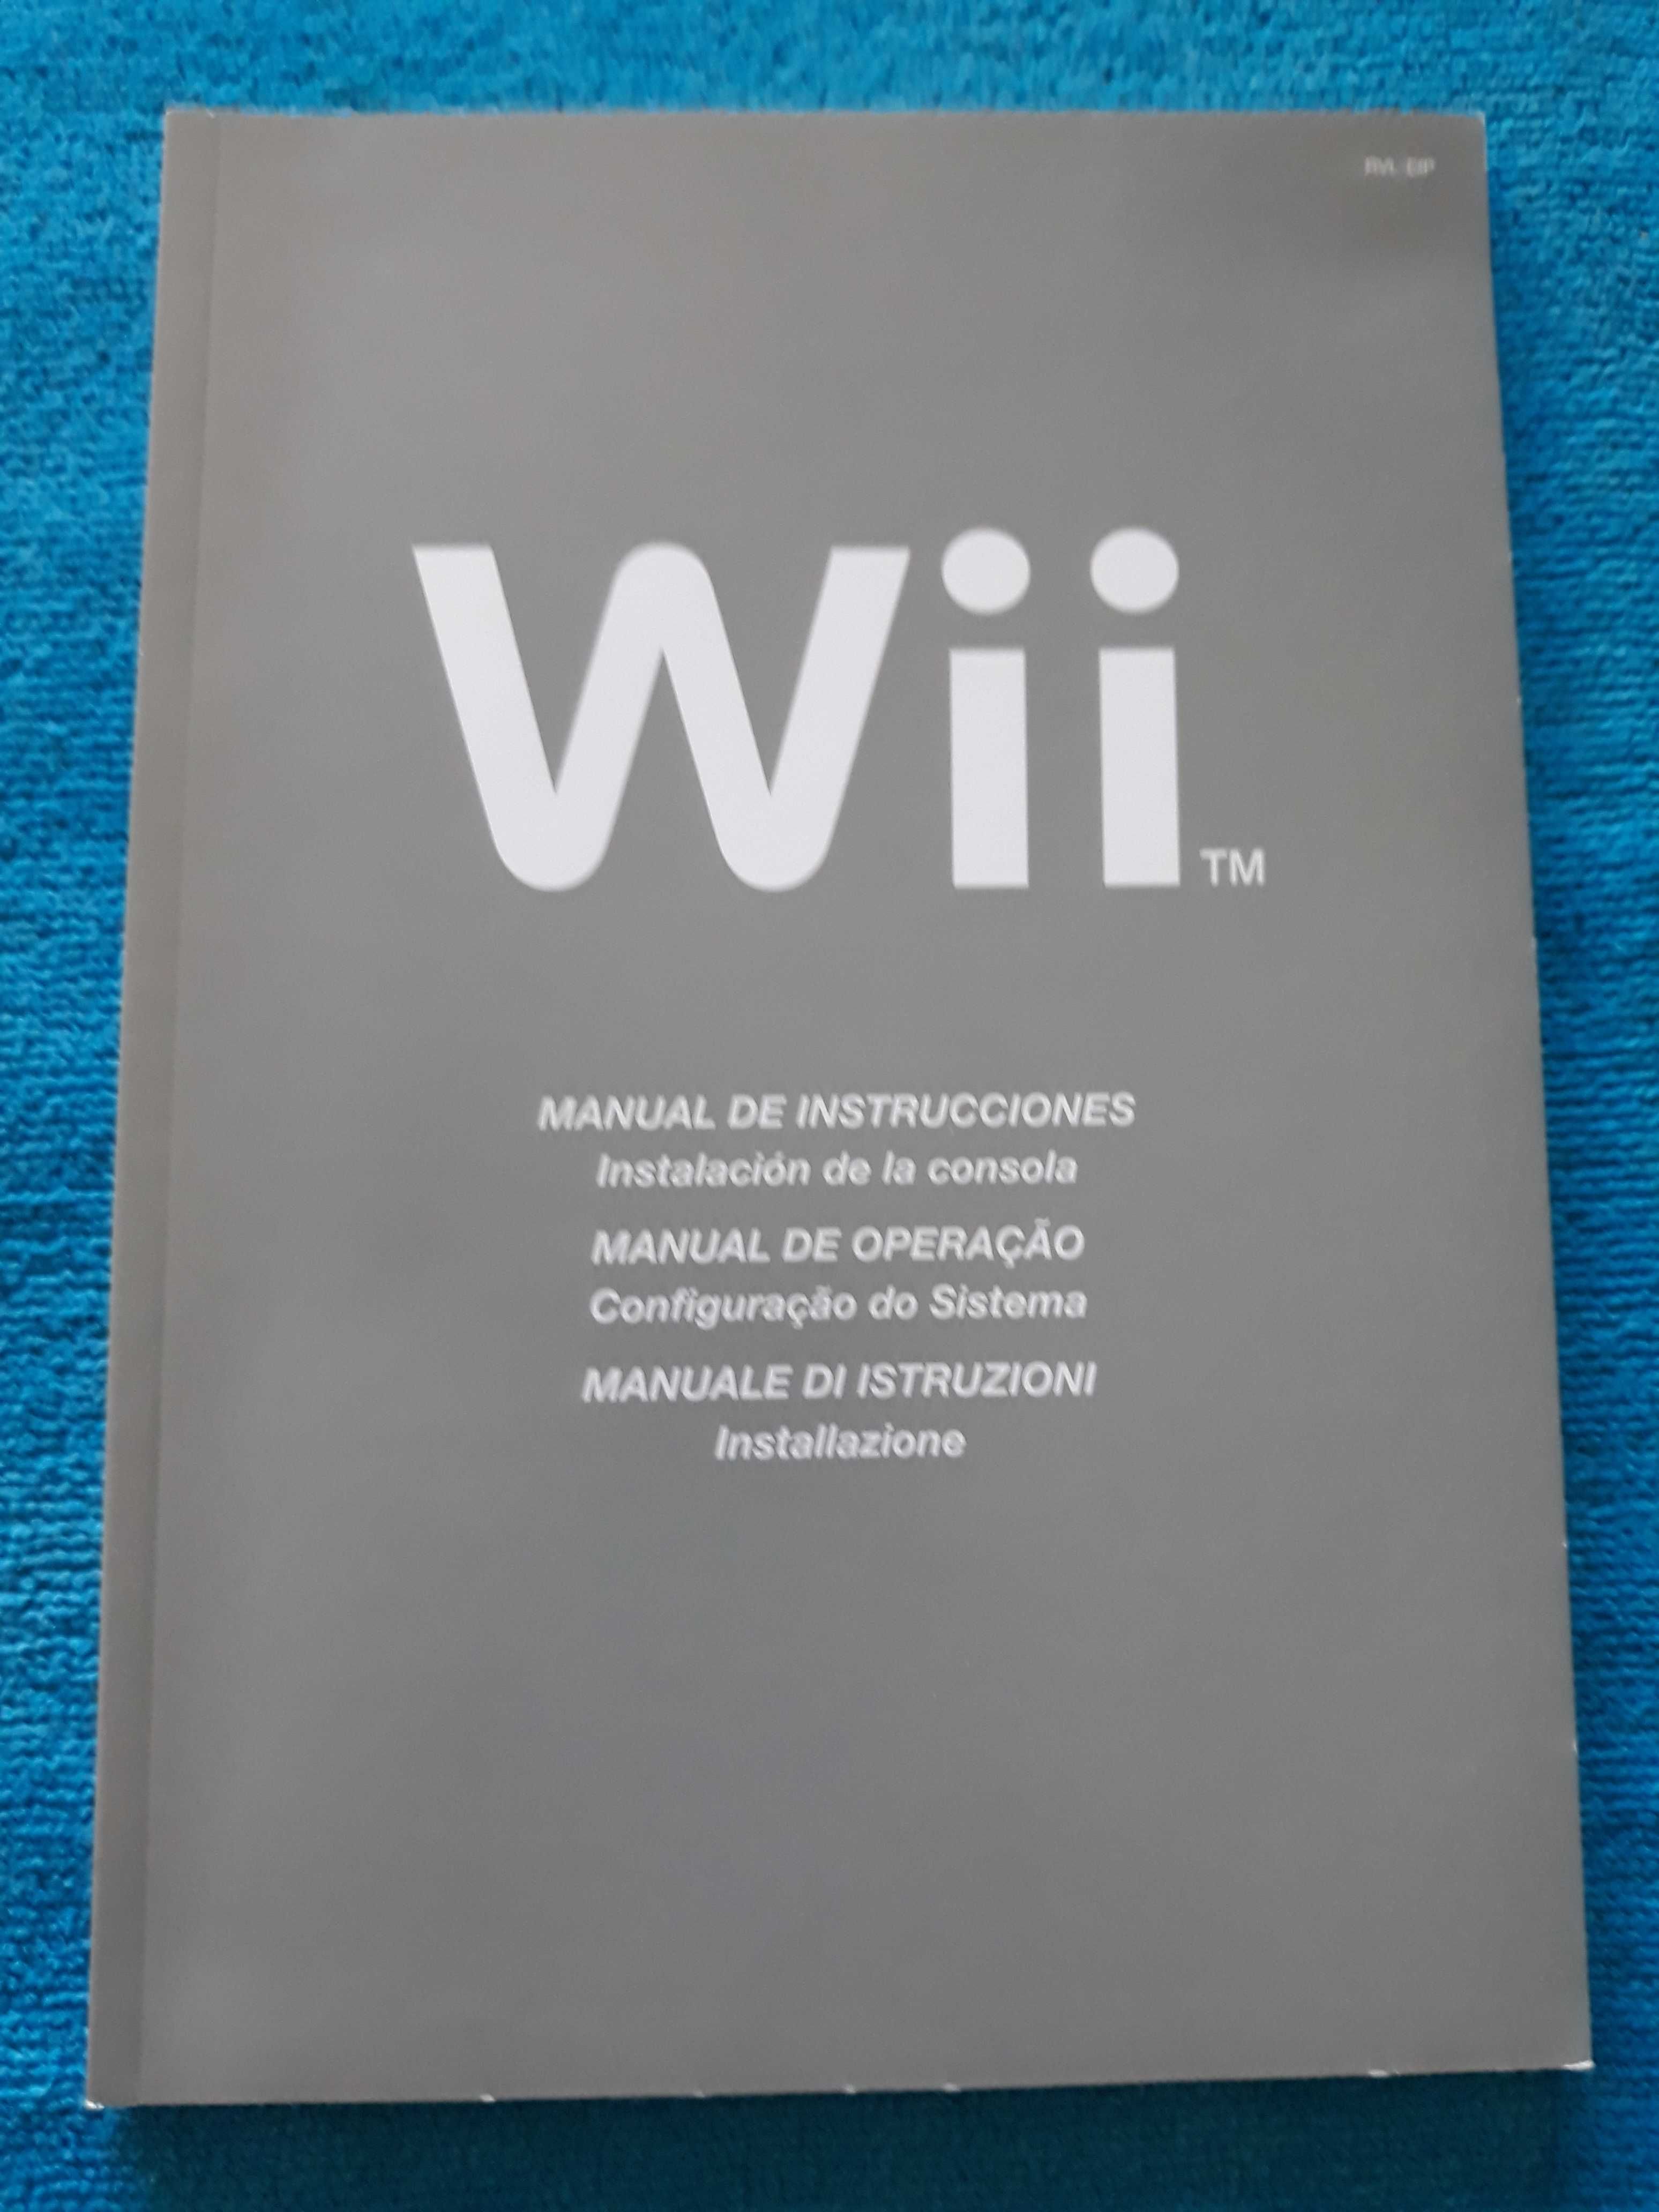 Consola Wii - Quase nova (muito pouco uso)